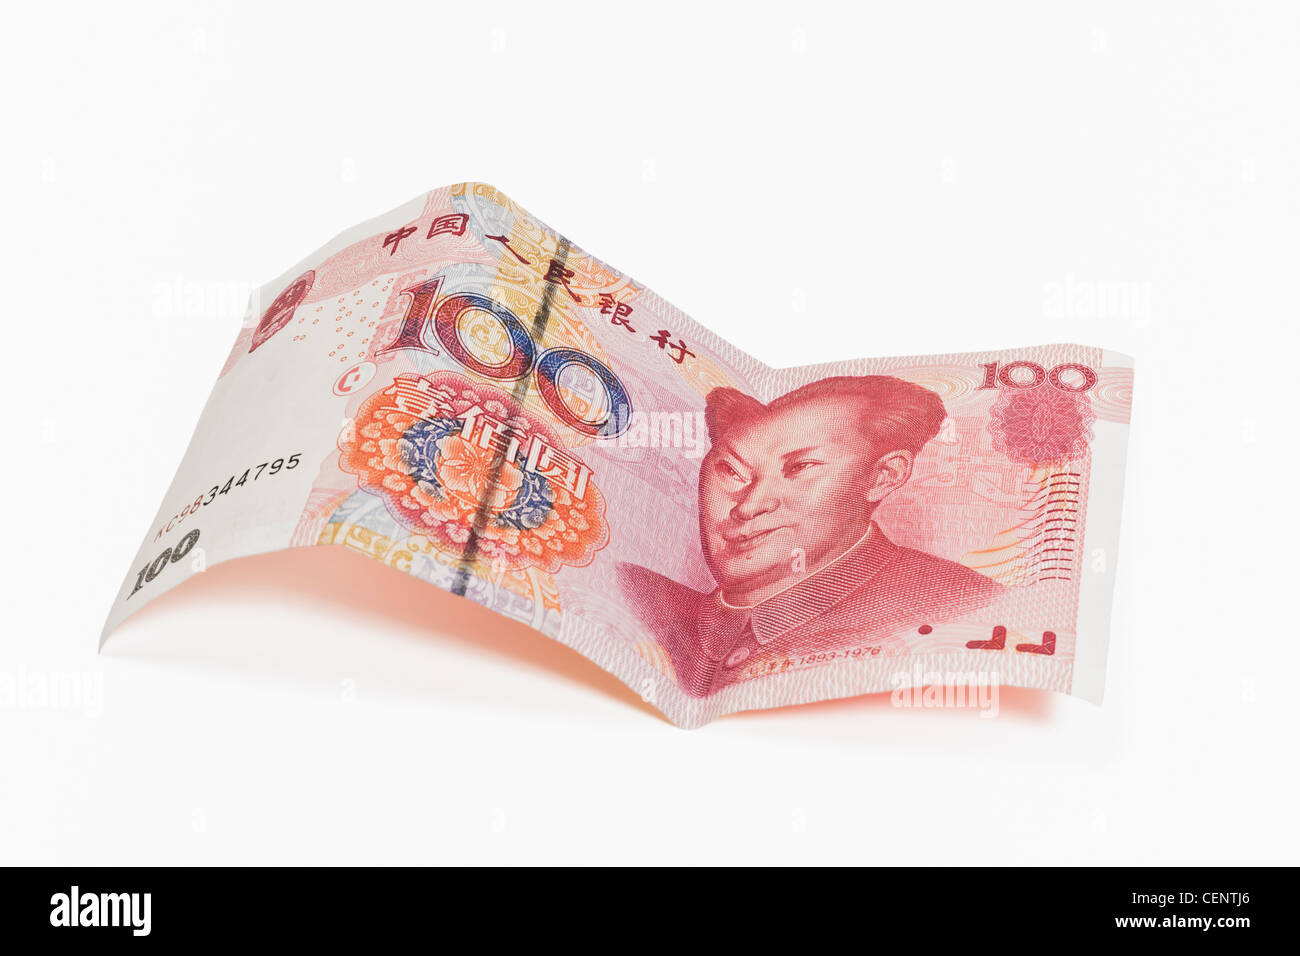 100 yuan bill con il ritratto di Mao Zedong. Il renminbi, la valuta cinese, è stato introdotto nel 1949. Foto Stock